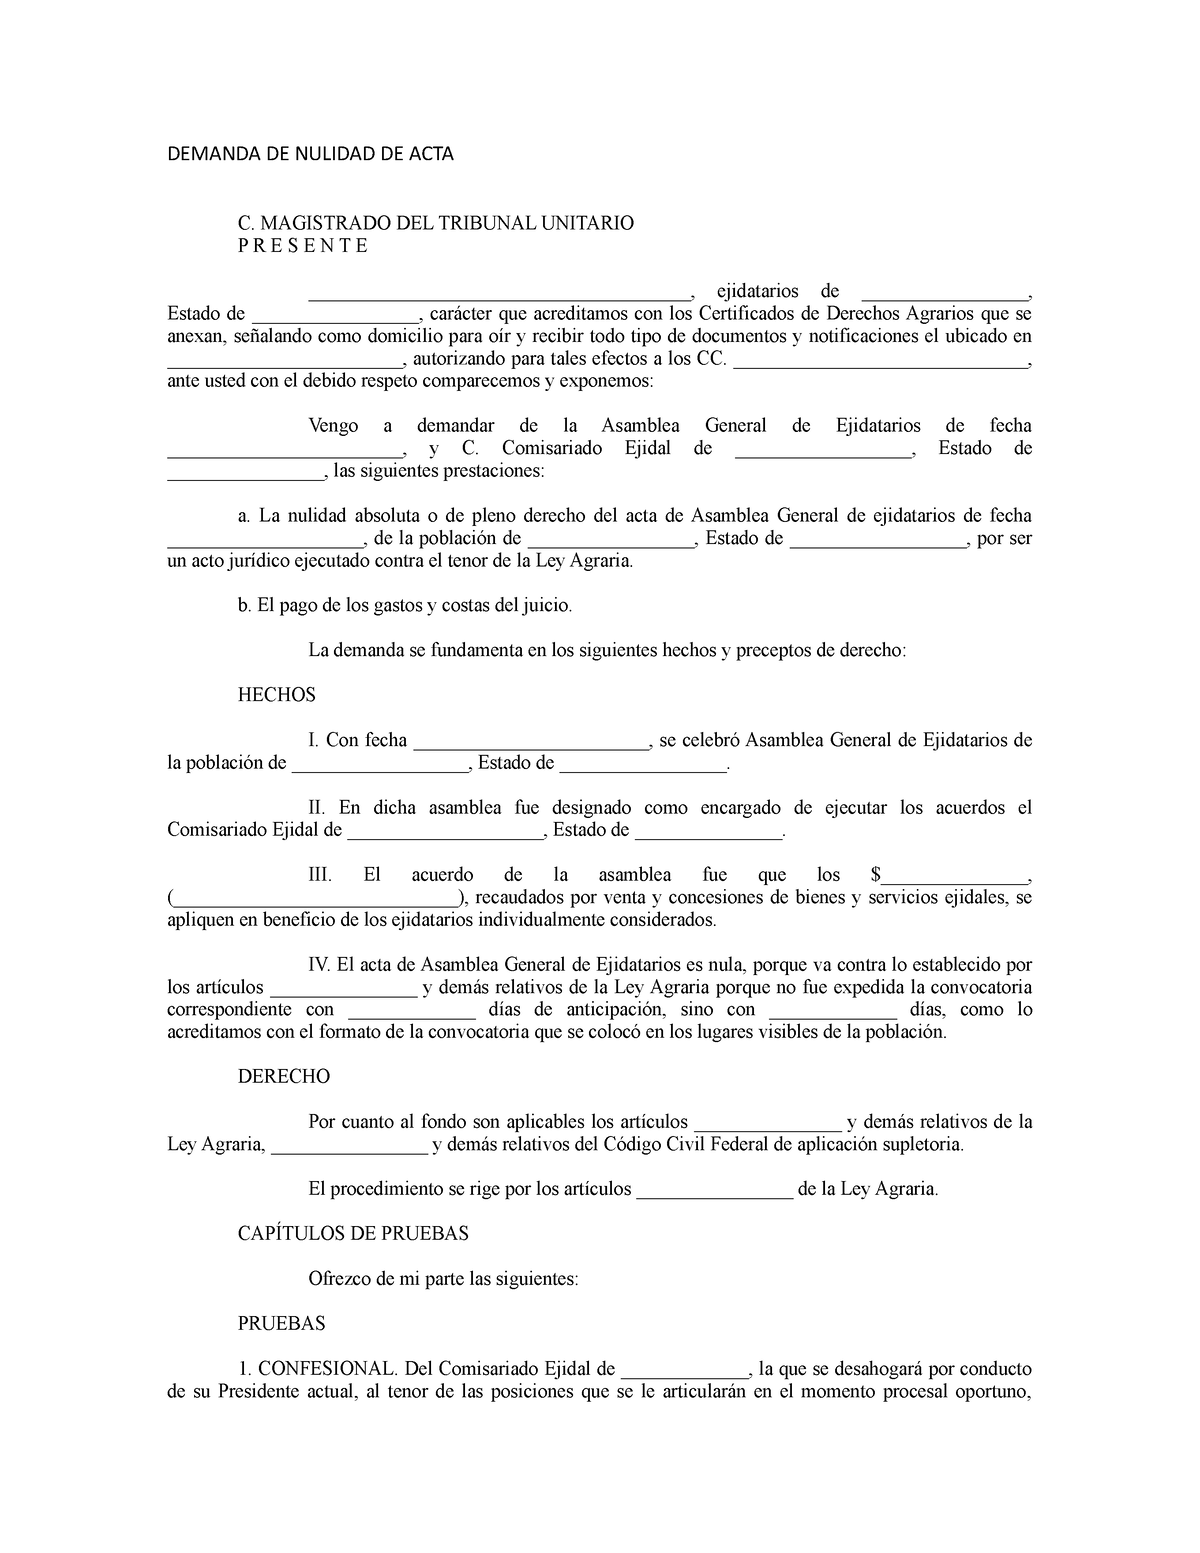 Demanda DE Nulidad DE ACTA - DEMANDA DE NULIDAD DE ACTA C. MAGISTRADO DEL  TRIBUNAL UNITARIO PRESENTE - Studocu